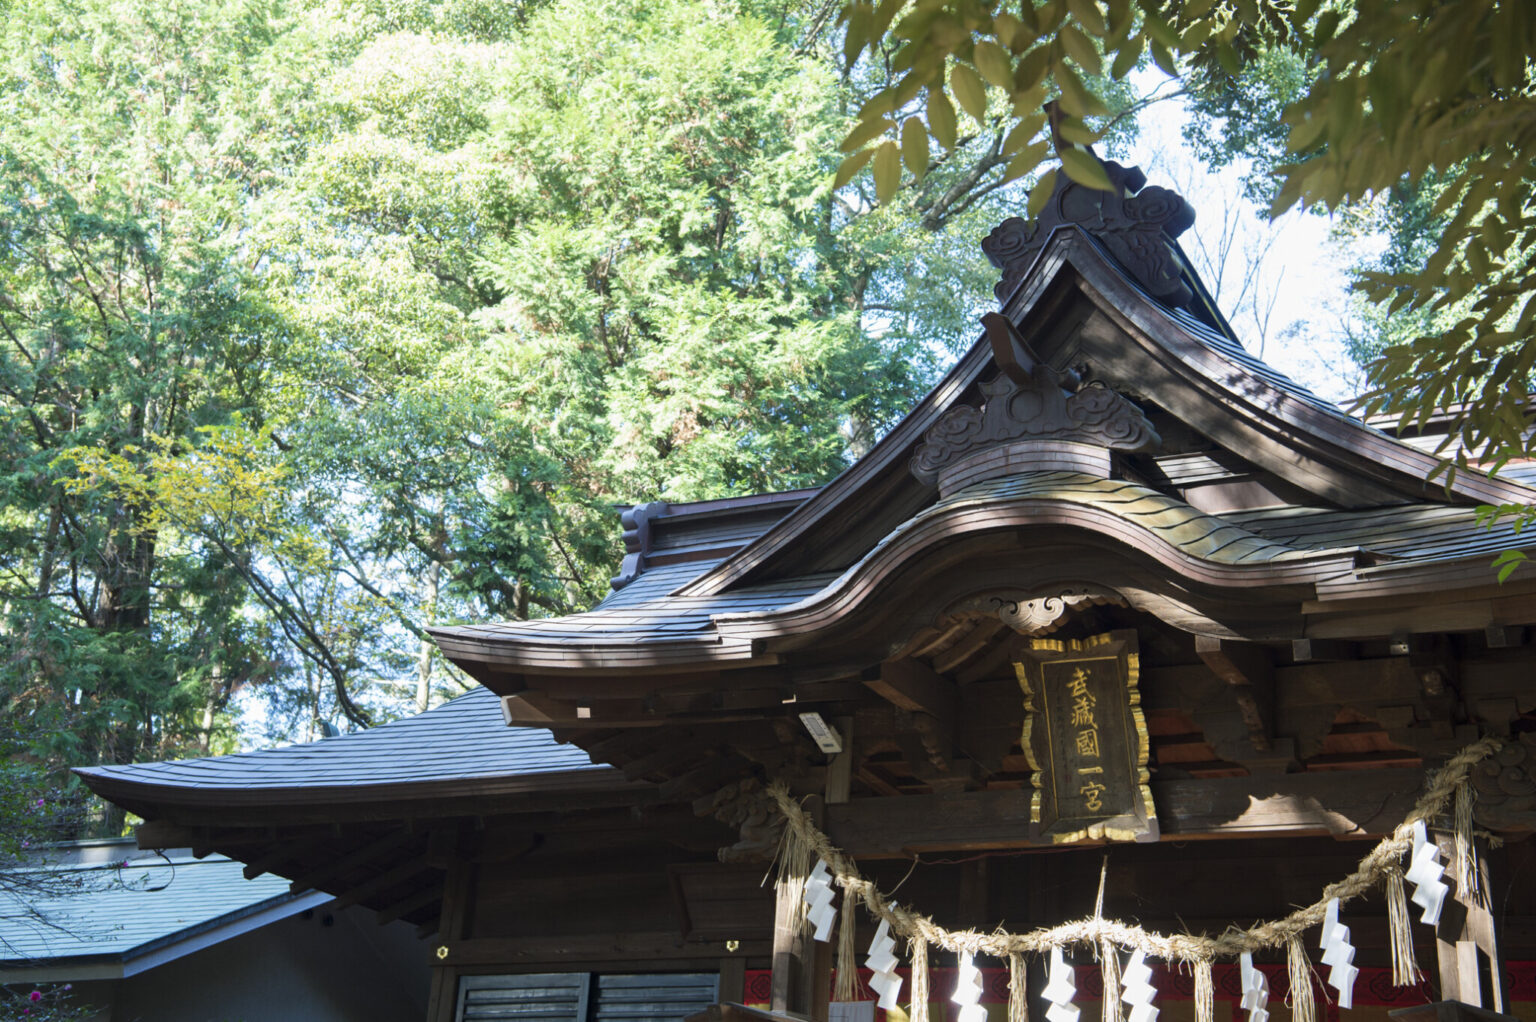 一の宮はひとつの国に2カ所あることも。氷川神社とは別の氷川女體神社（ひかわにょたいじんじゃ）もそれにあたる。本殿の額には「武蔵一宮」とある。